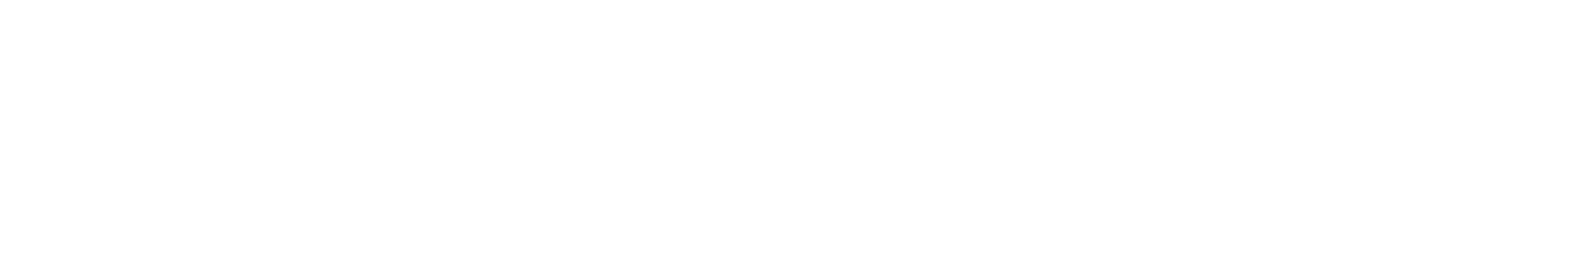 KeyCorp (KeyBank) Logo groß für dunkle Hintergründe (transparentes PNG)